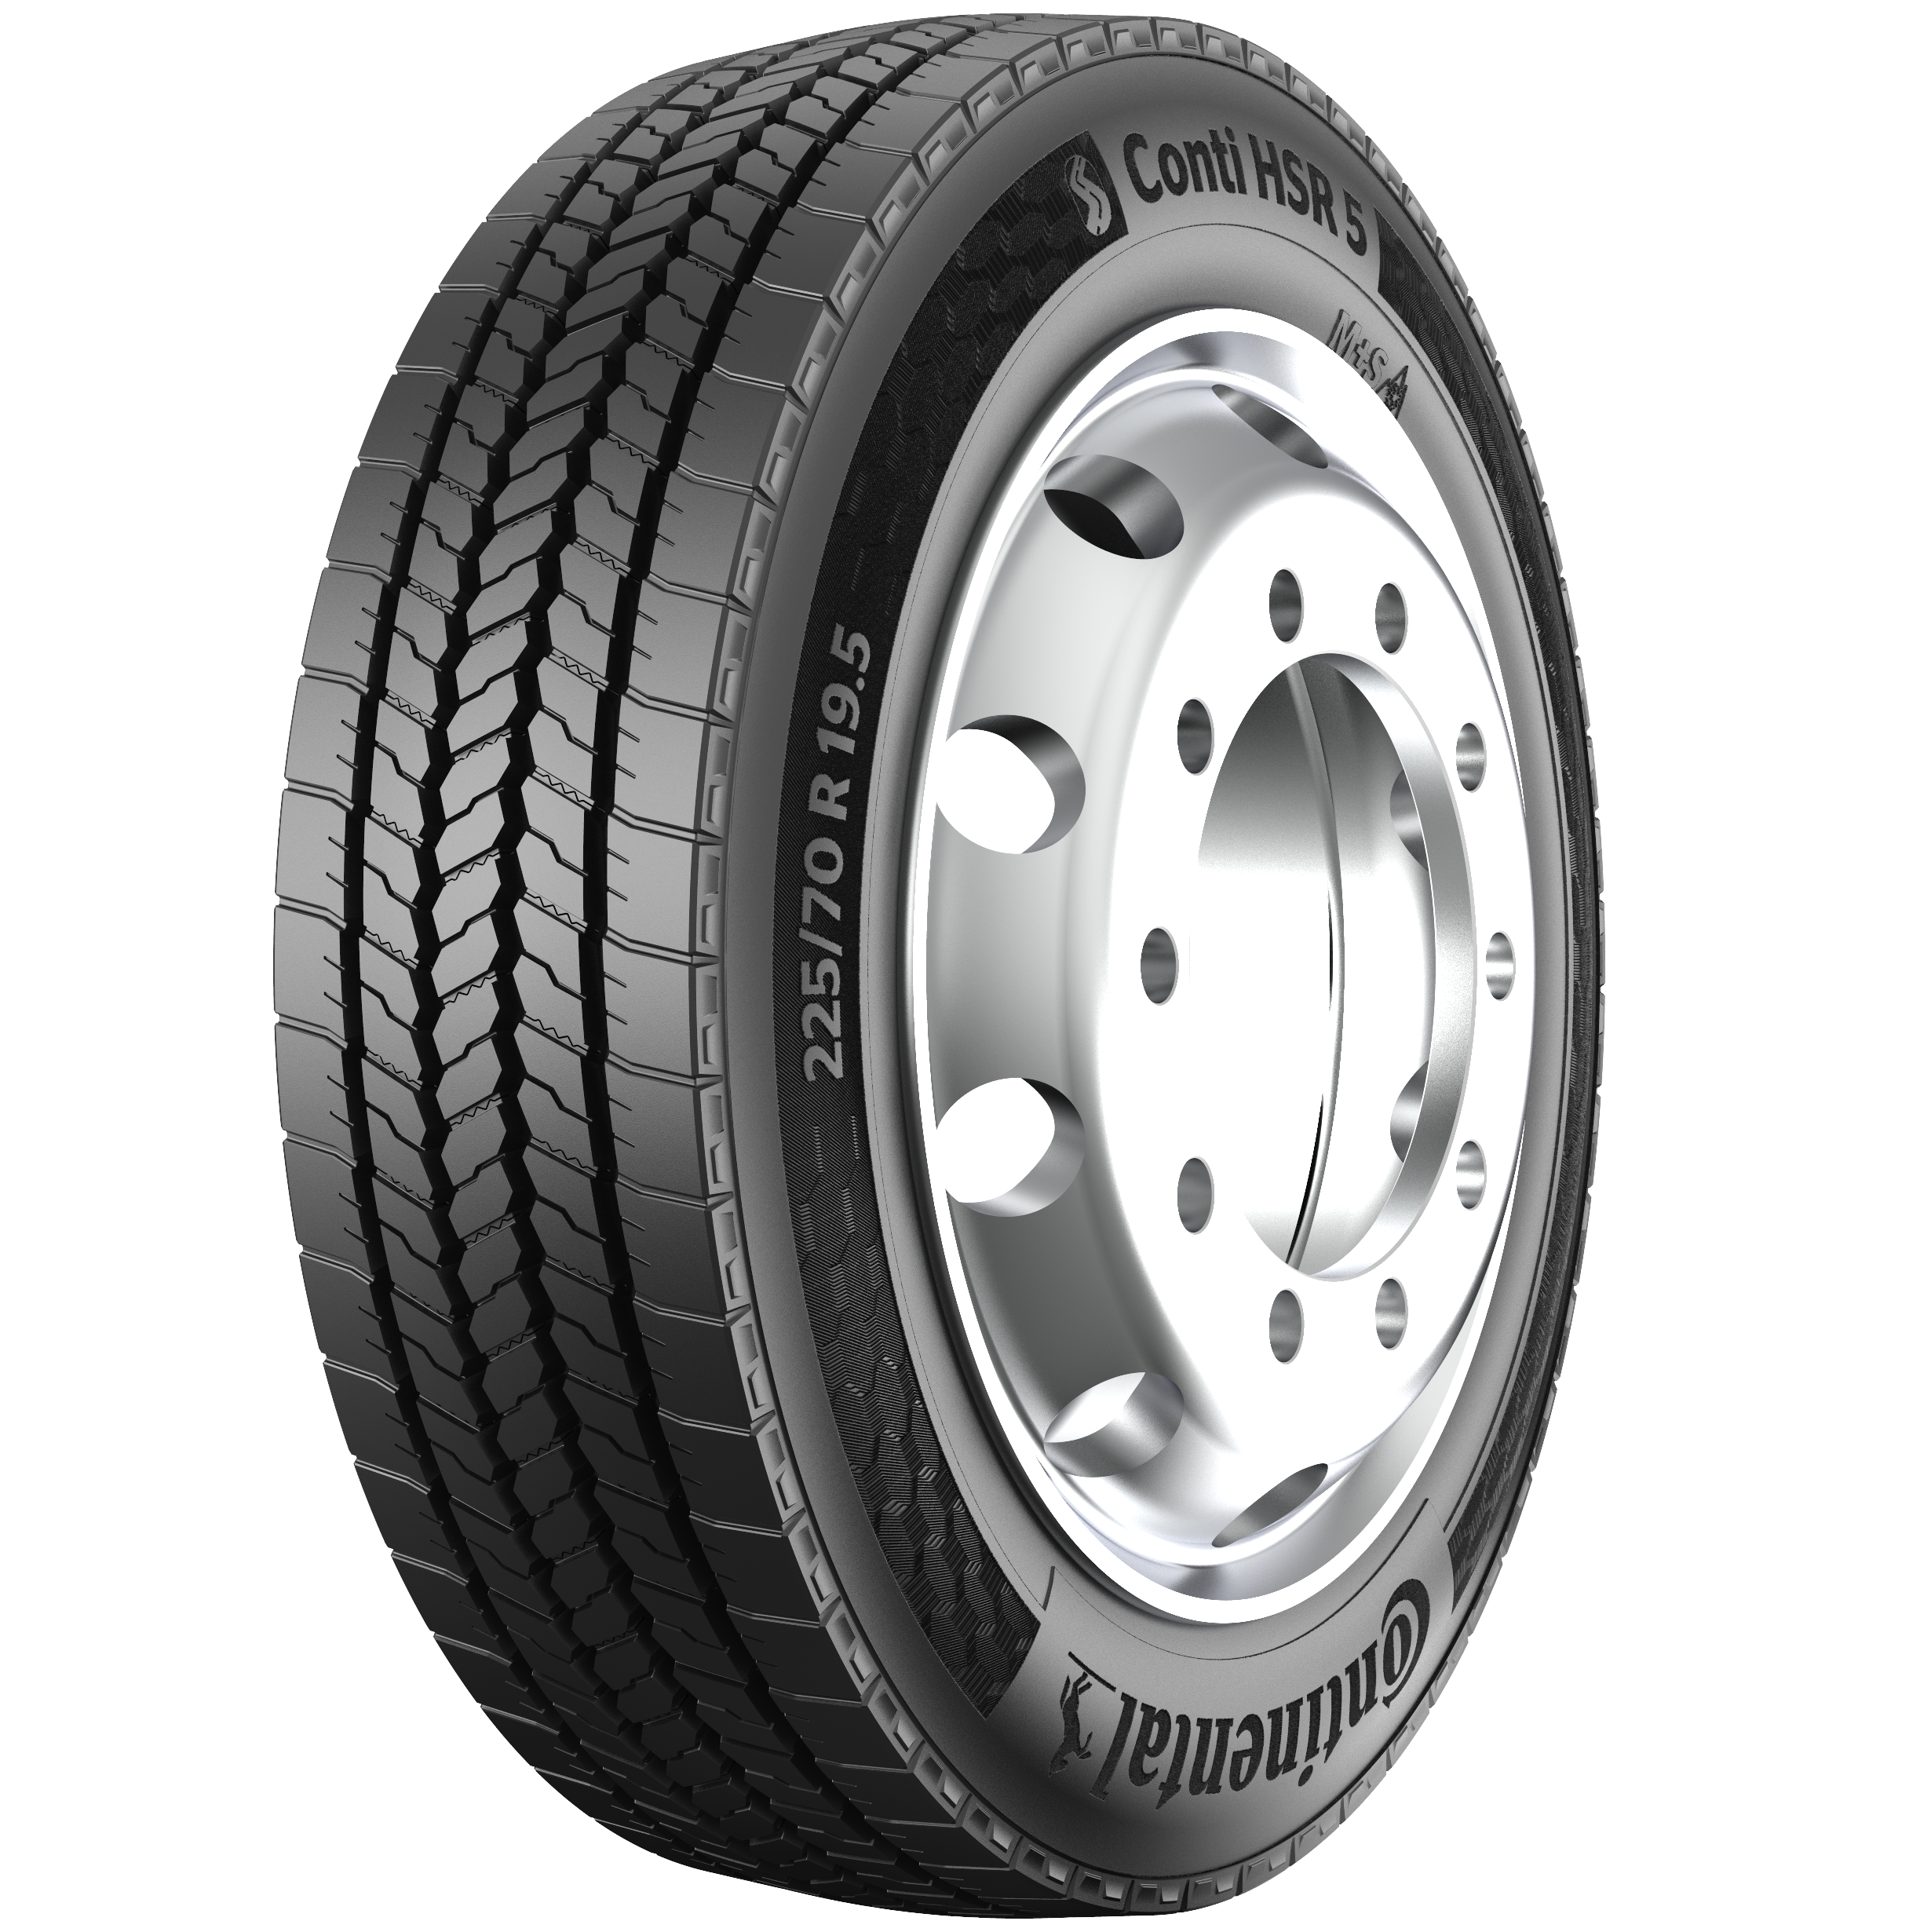 Conti HSR 5 19.5 Tire